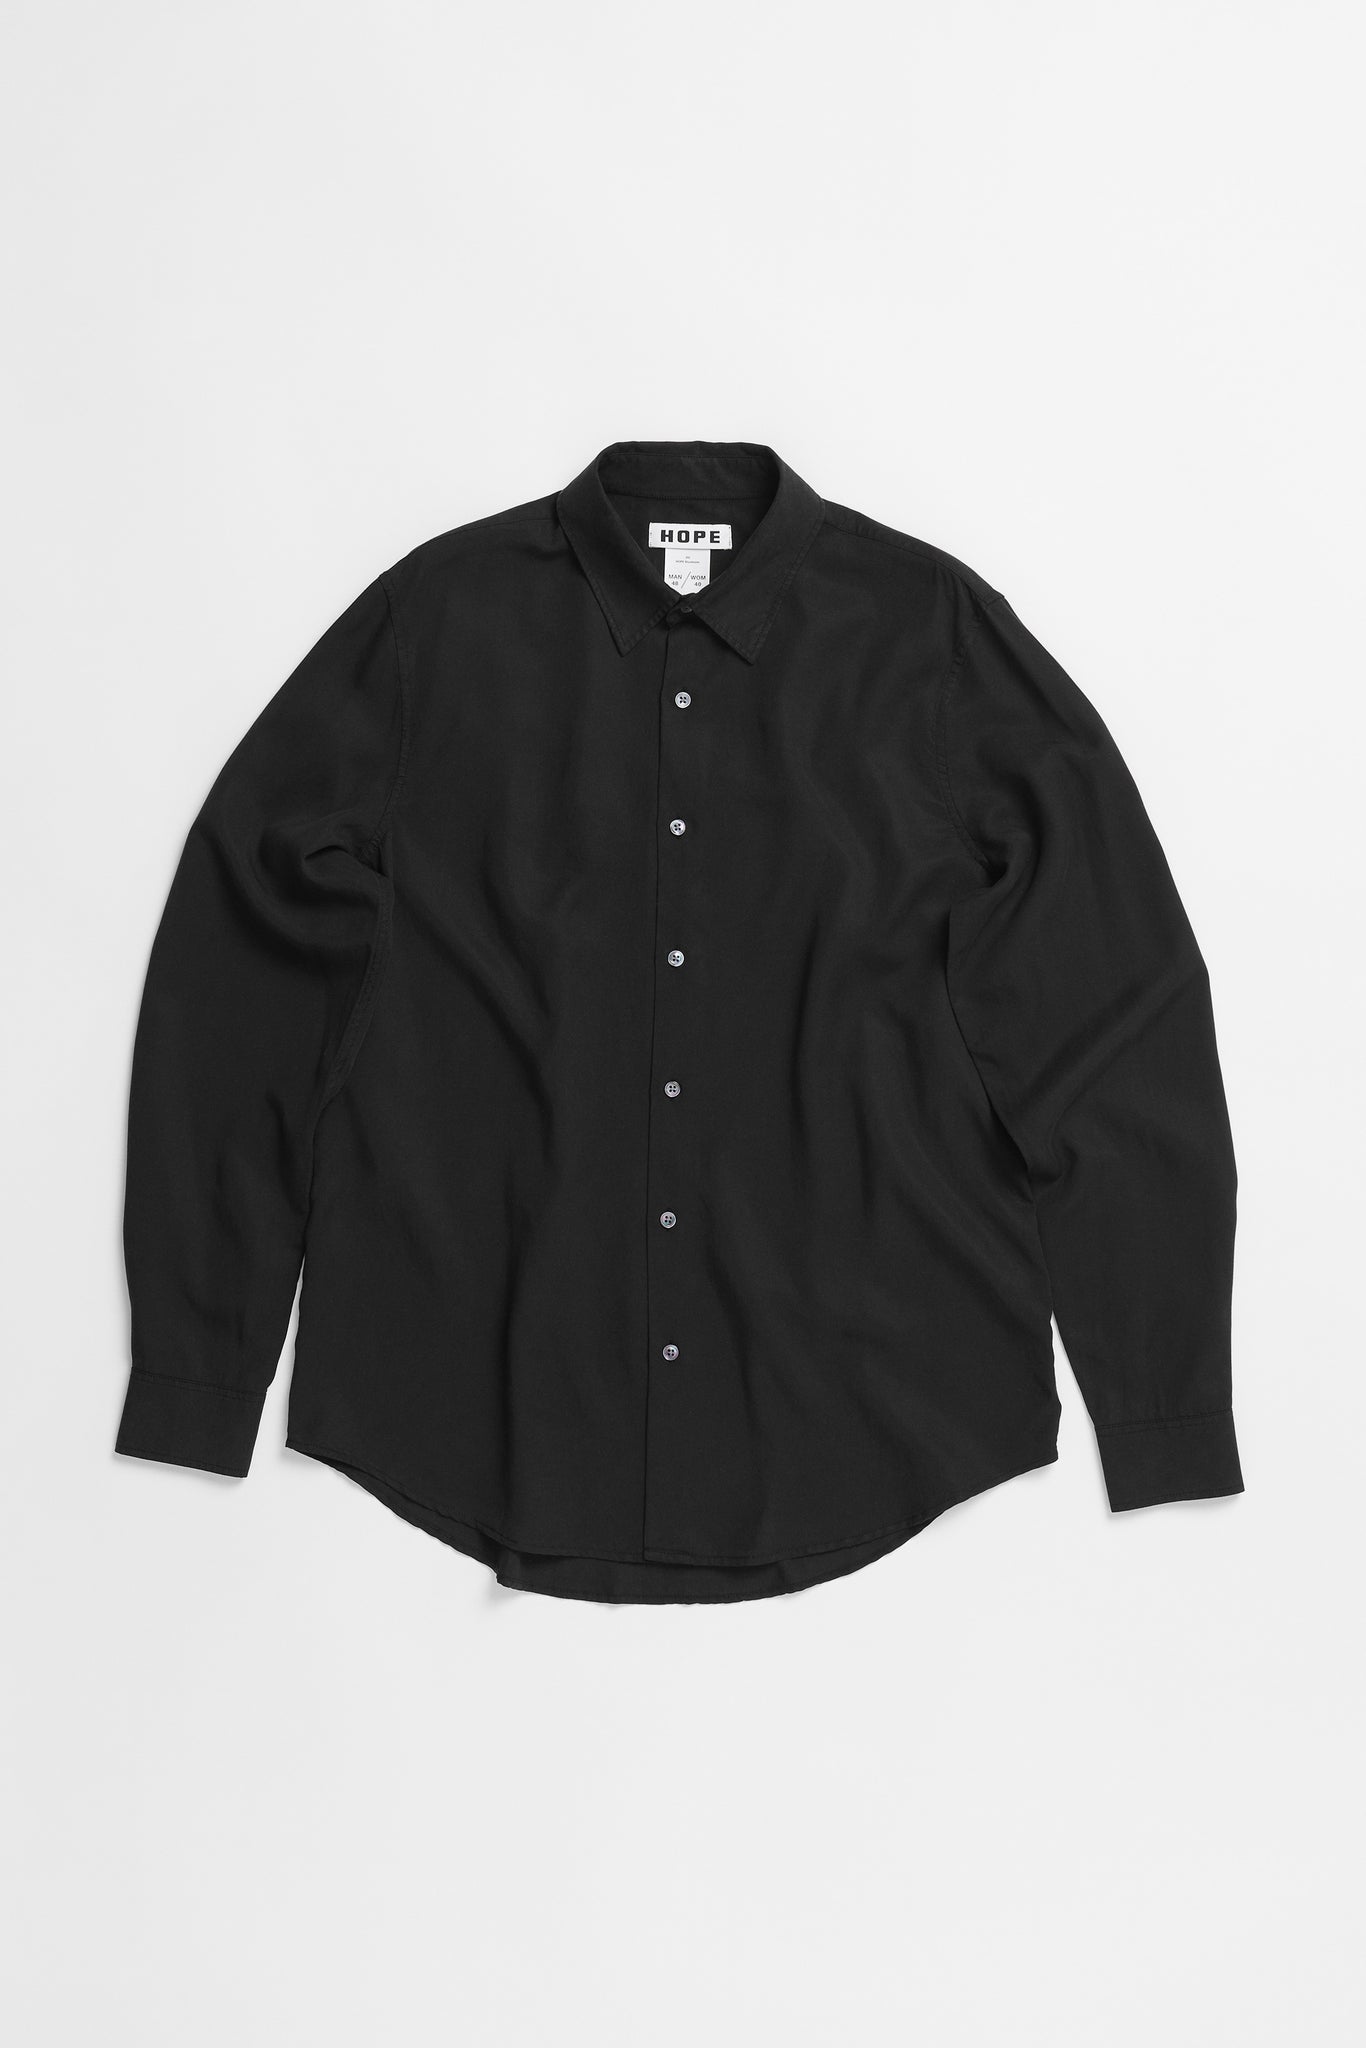 Fit Black – - in Clean Shirt Air HOPE Shirt STHLM Regular